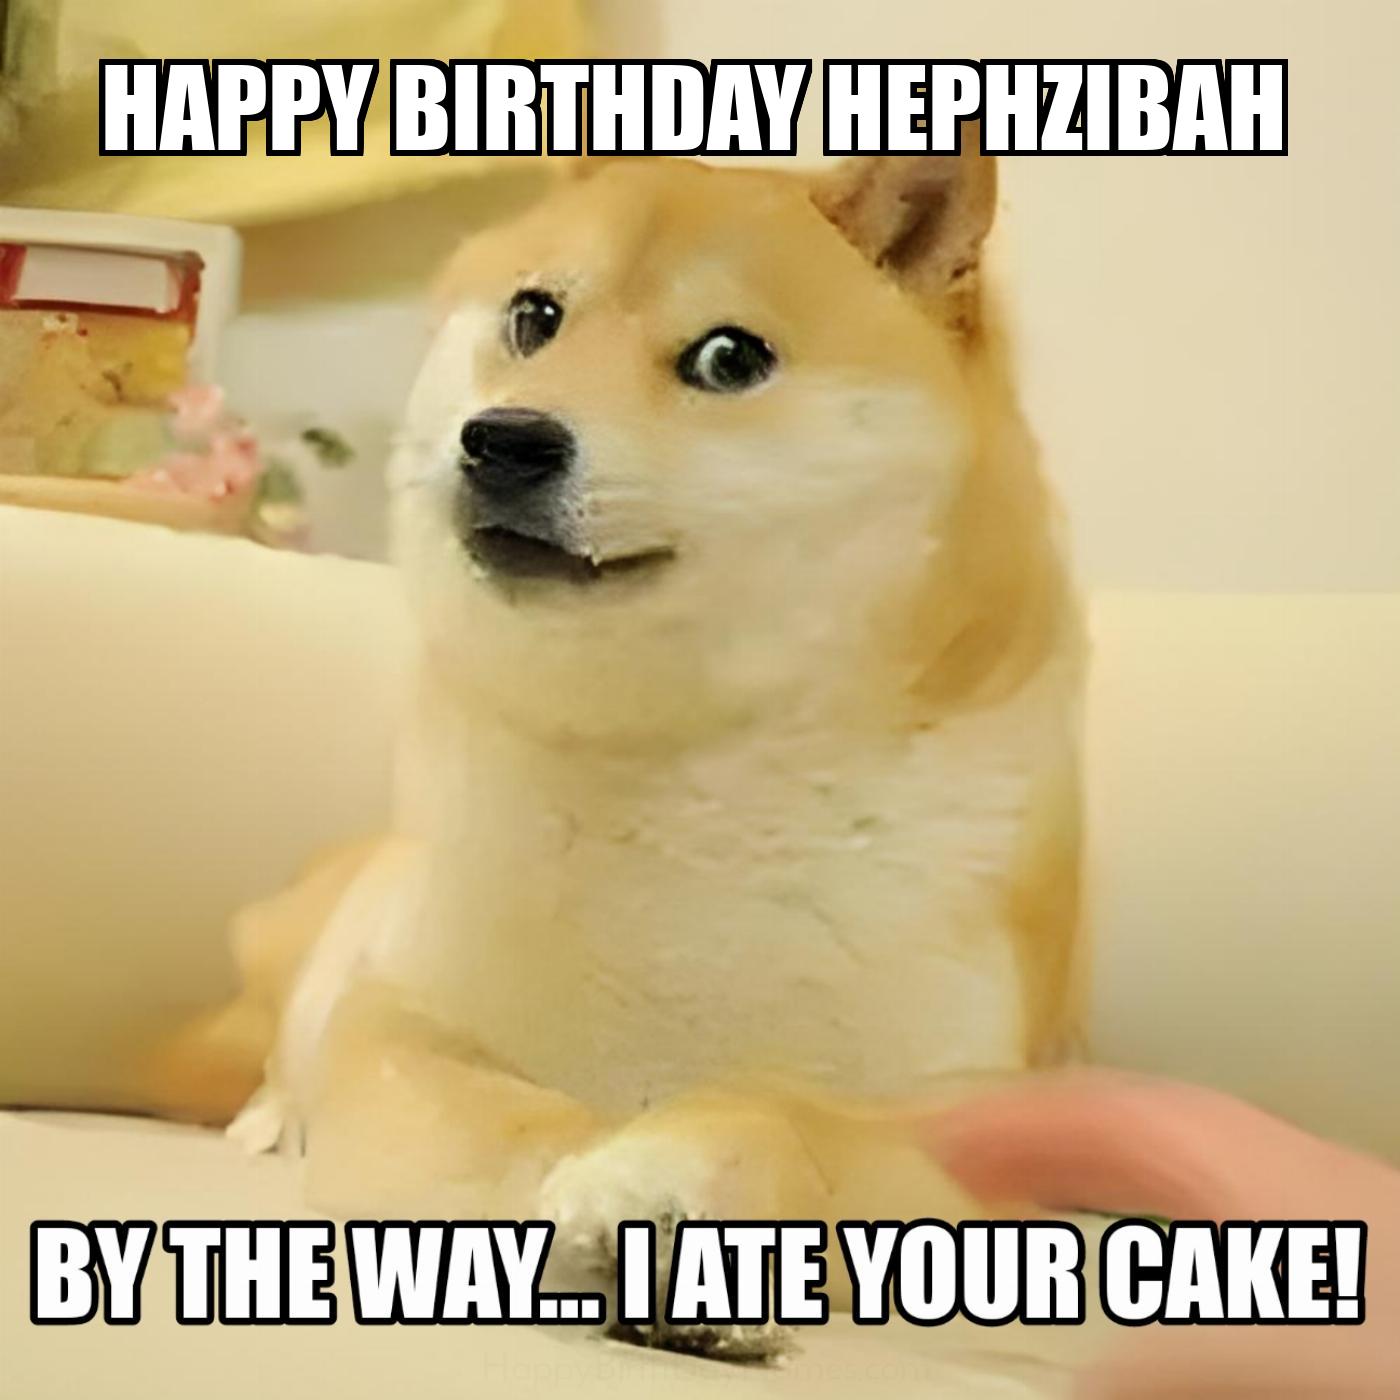 Happy Birthday Hephzibah BTW I Ate Your Cake Meme